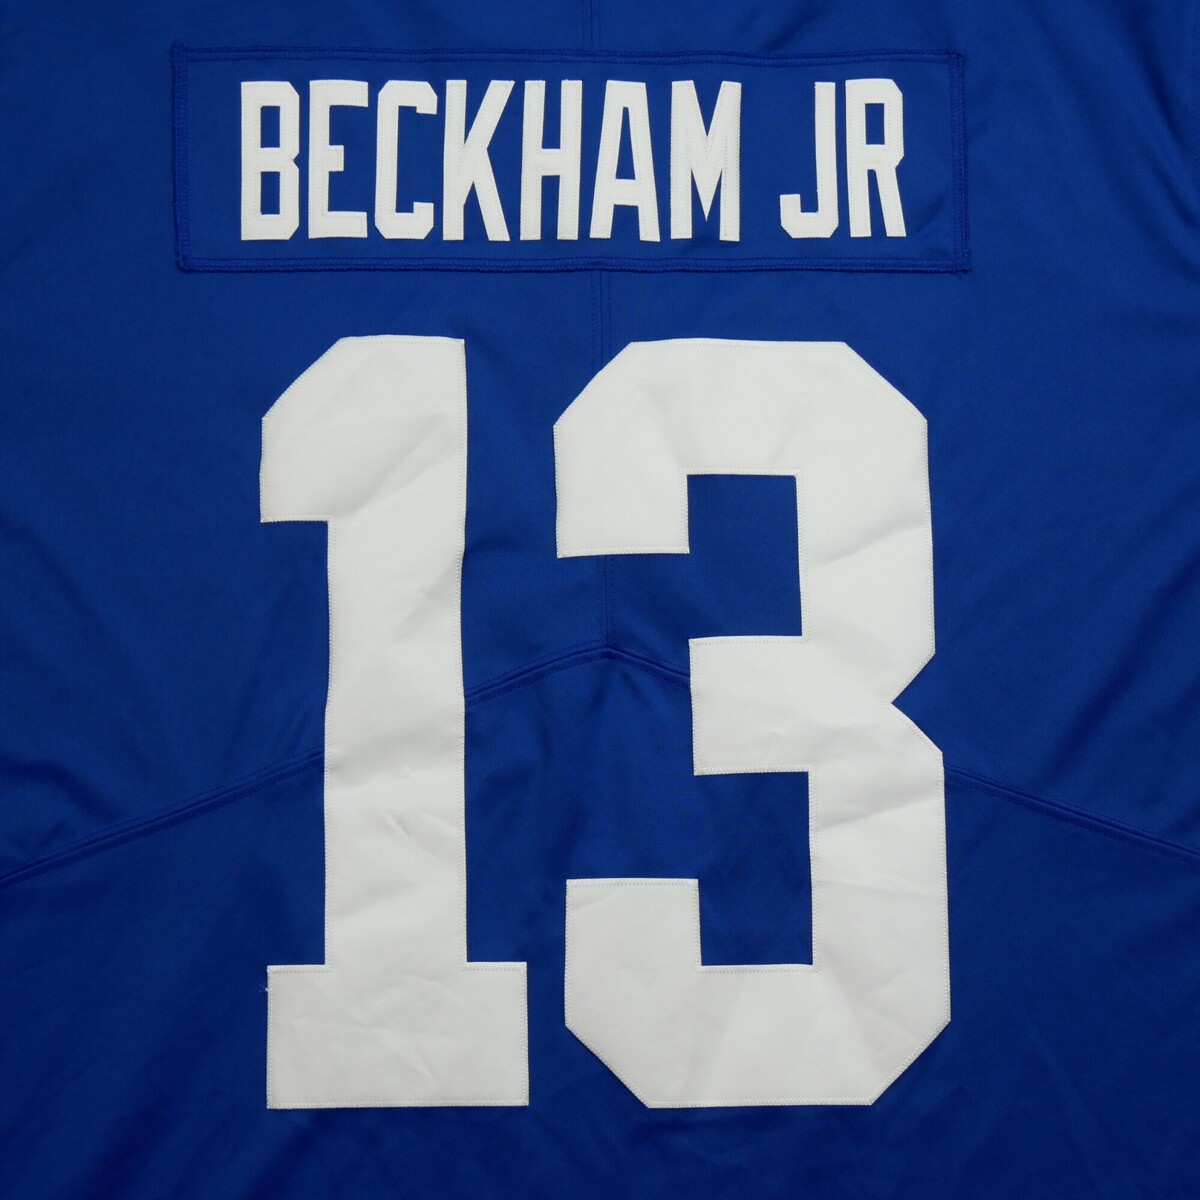 Nike Bleu Maillot New York Giants Beckham NFL XOUpPoIl